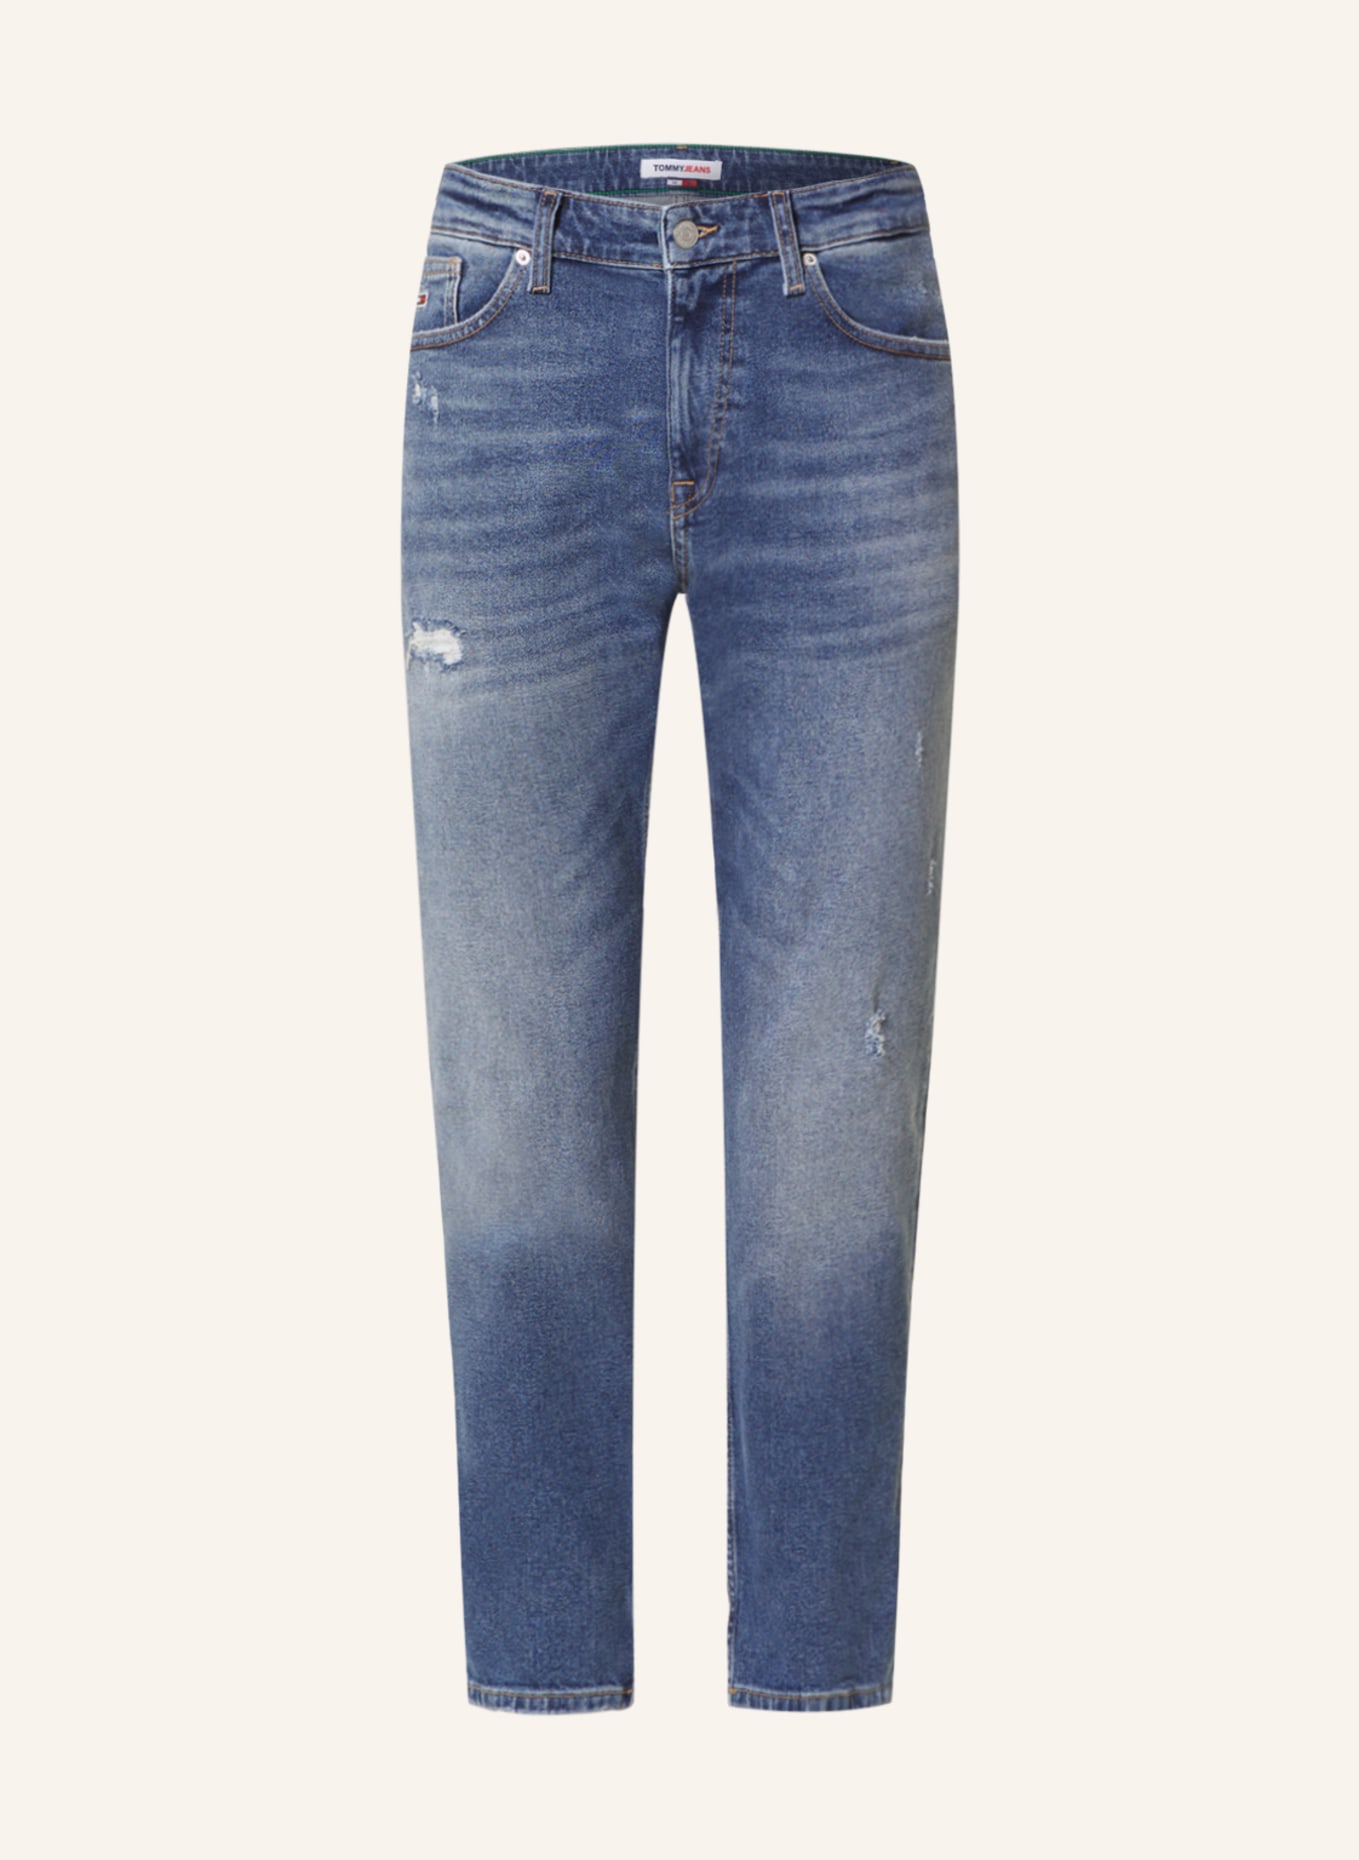 TOMMY JEANS Jeans AUSTIN Slim Fit, Farbe: 1A5 Denim Medium (Bild 1)